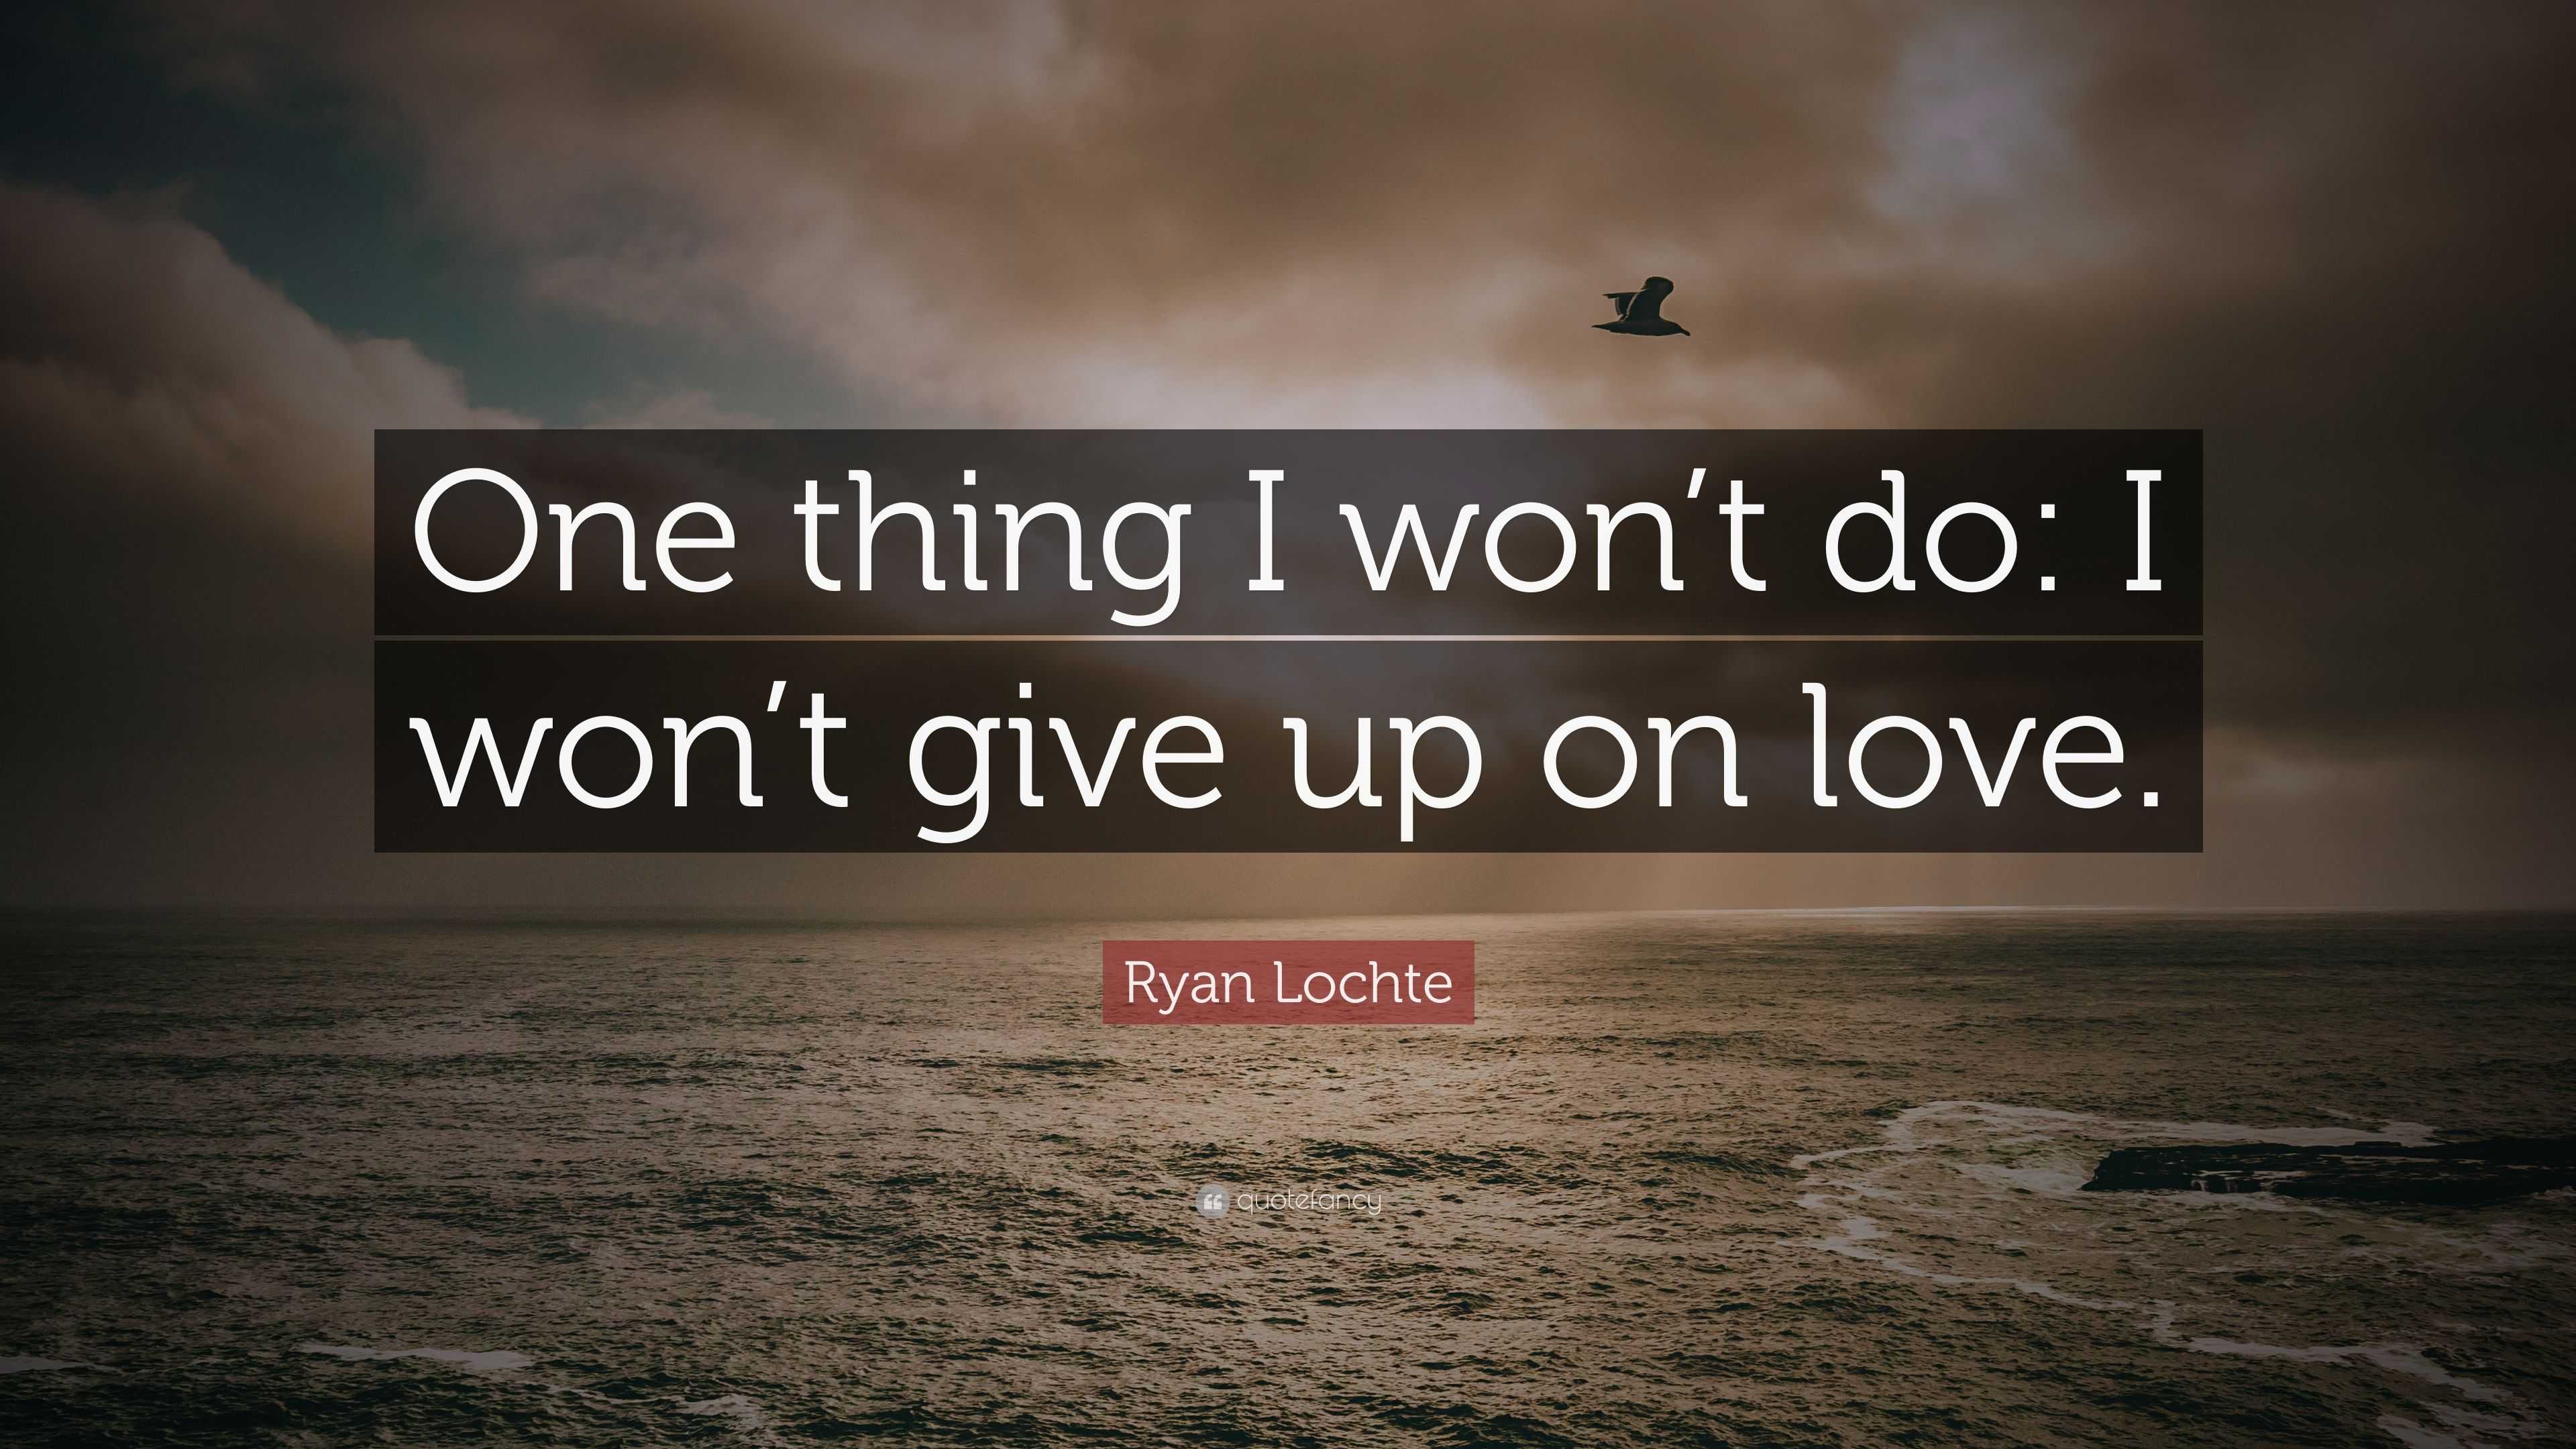 Ryan Lochte Quote “ e thing I won t do I won